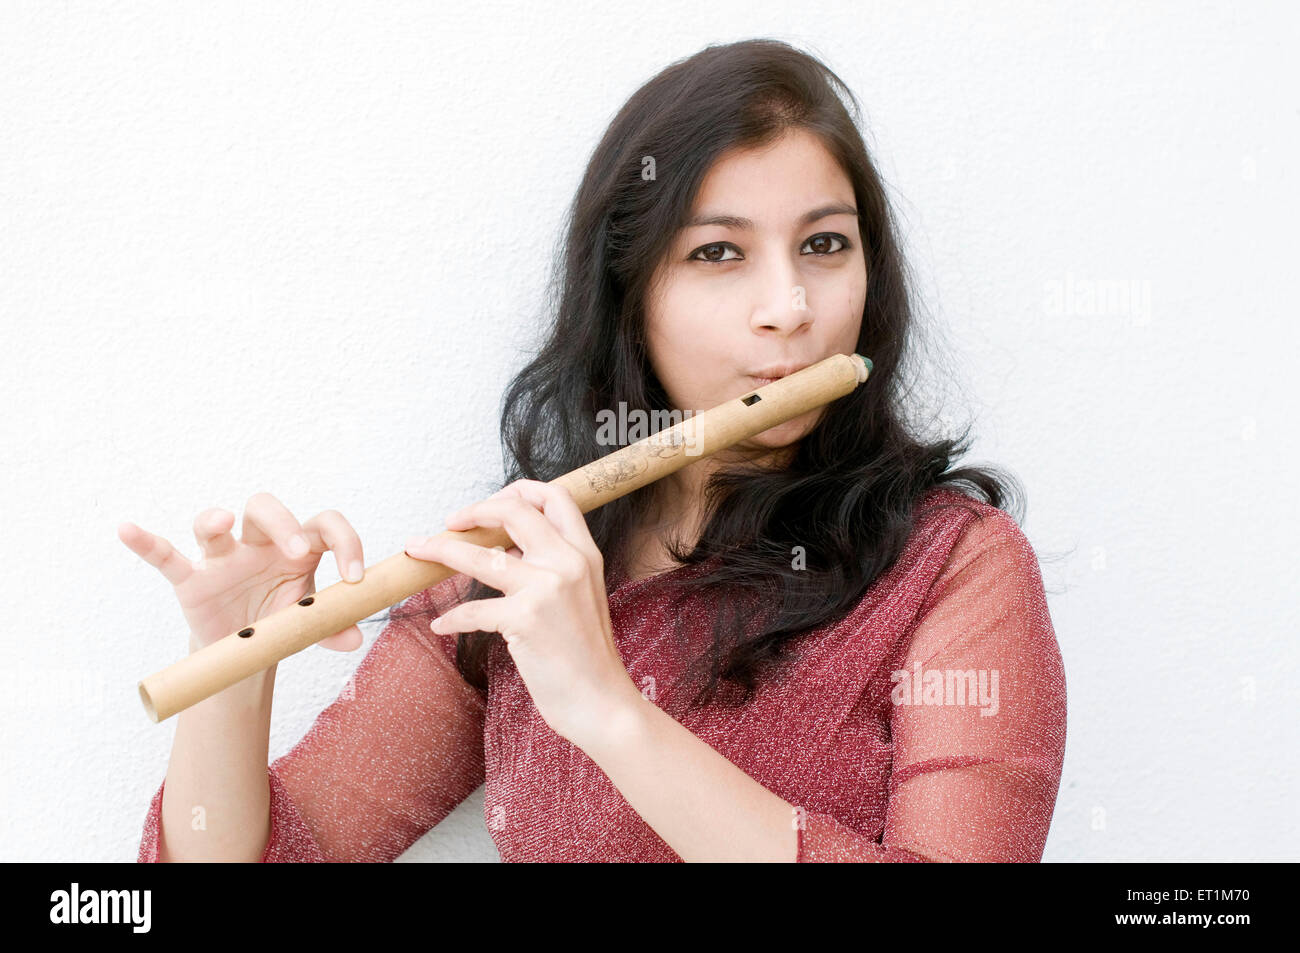 Un portrait de jeune fille jouant de la flûte maharashtrian Pune Maharashtra Inde Asie M. #  686EE Banque D'Images